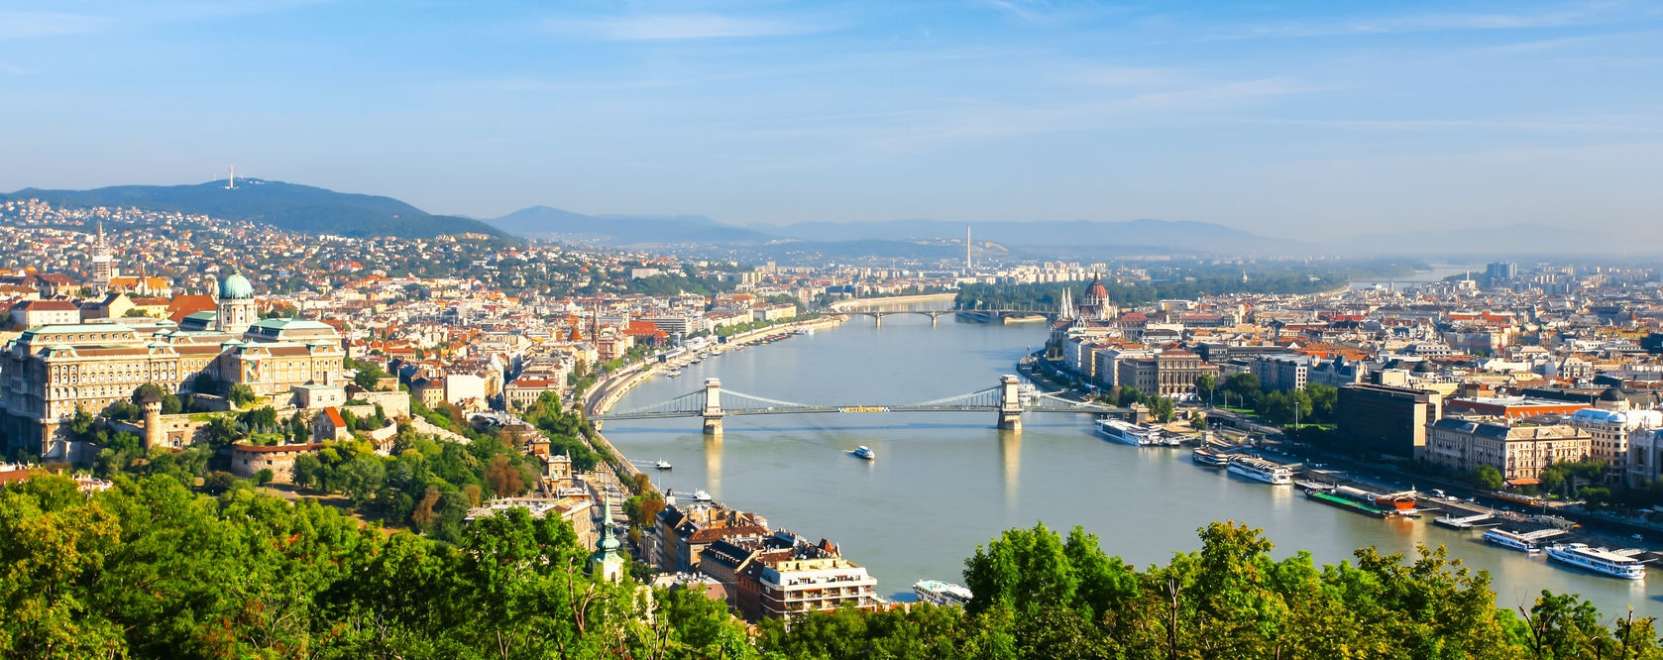 Úton a smart city felé – Budapesten tart konferenciát az IDC